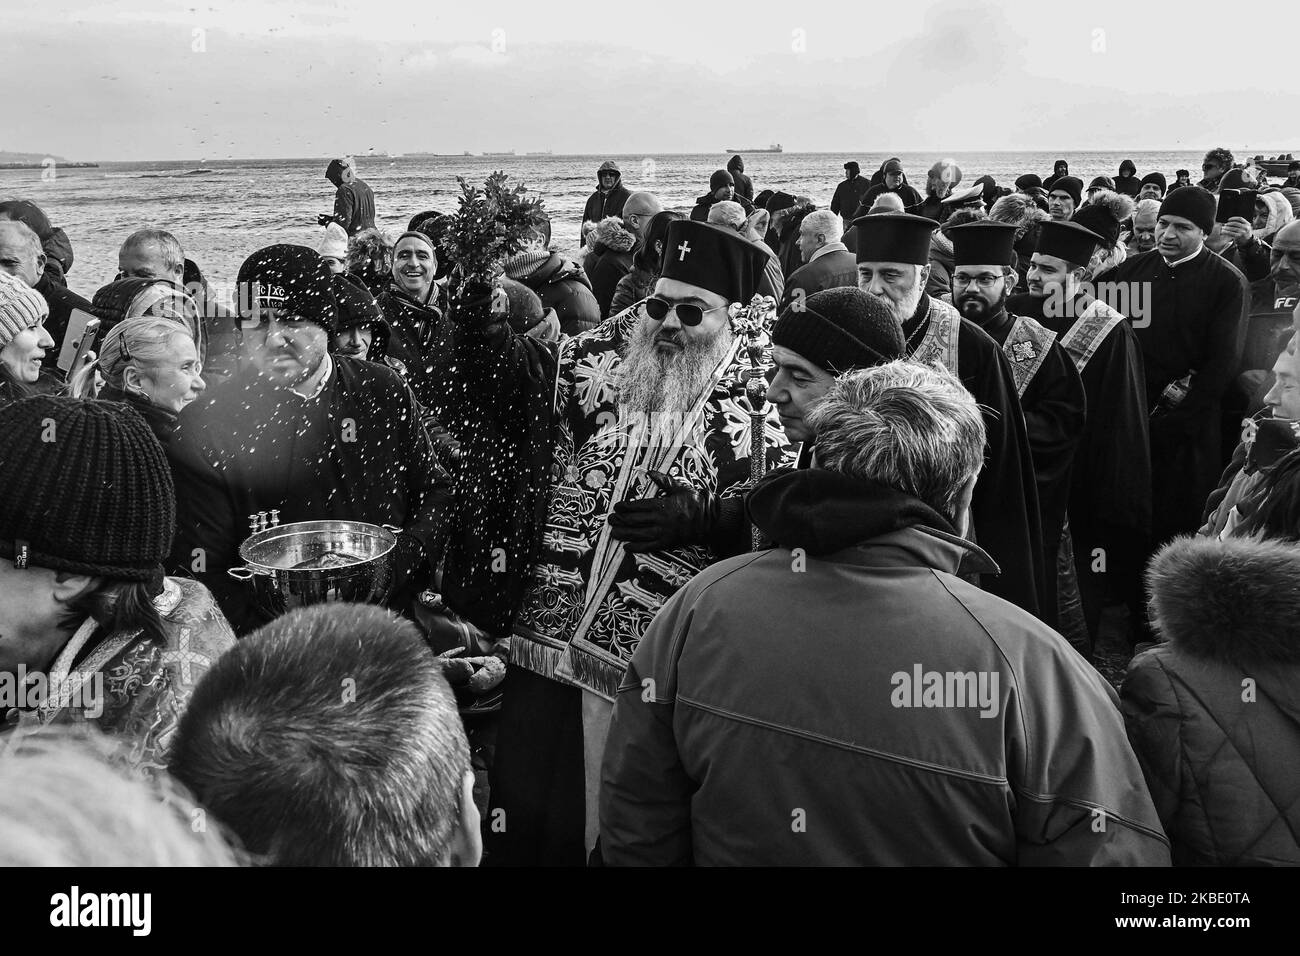 (ANMERKUNG DER REDAKTION: Bild wurde in Schwarz-Weiß umgewandelt) Bulgaren feiern die Epiphanie, als Männer im frostigen Wasser des Schwarzen Meeres bei der so genannten Zeremonie „das Kreuz aus dem Meer nehmen“ am 6. Januar 2020 in Varna, Bulgarien, springen. Traditionell wirft ein orthodoxer Priester ein Kreuz in den Fluss und es wird angenommen, dass derjenige, der es holt, das ganze Jahr über gesund sein wird, sowie alle, die im eisigen Wasser tanzen. (Foto: Impact Press Group/NurPhoto) Stockfoto